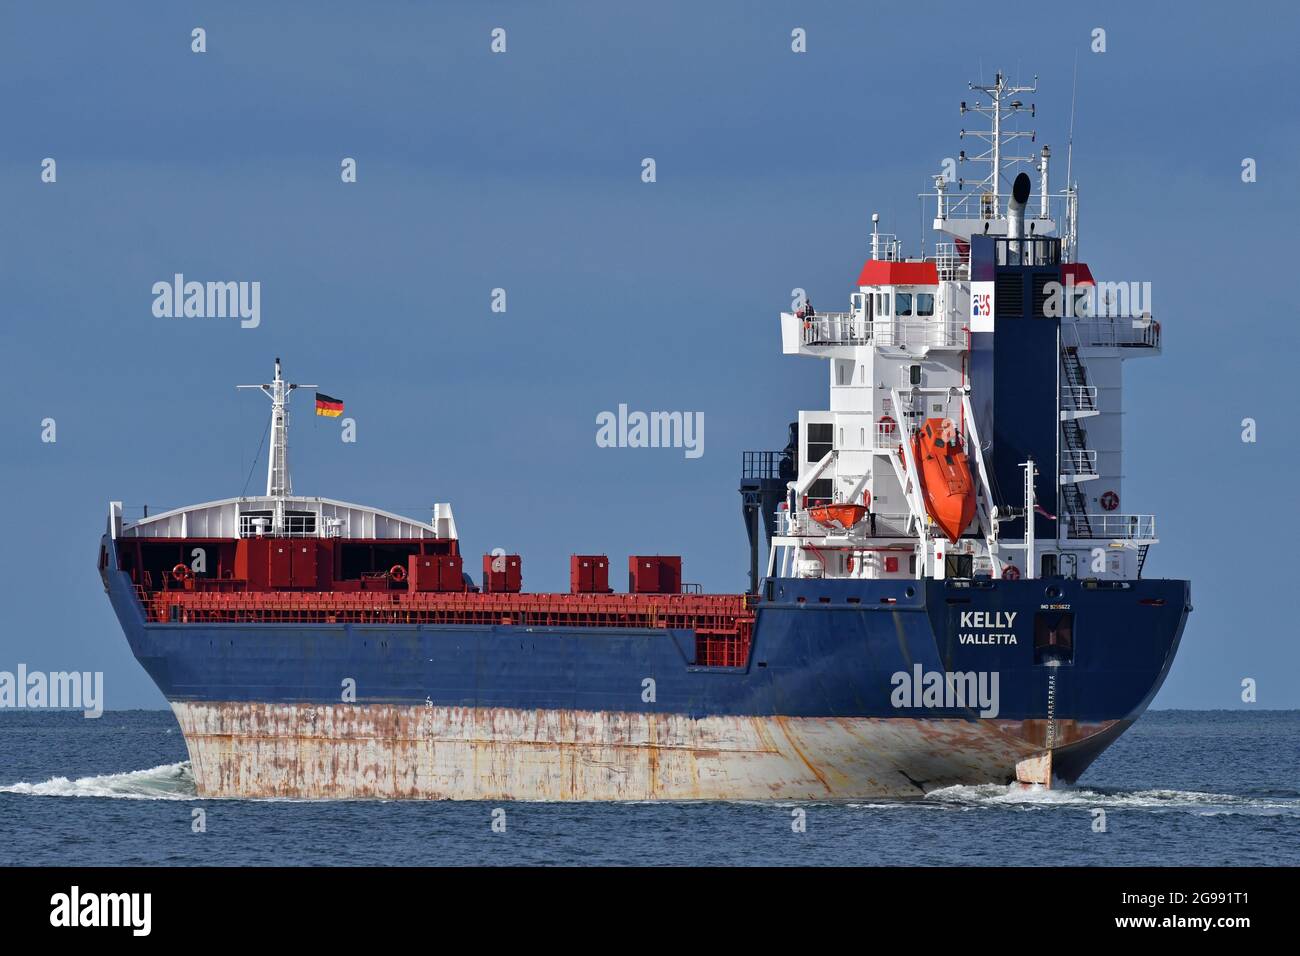 Hansa Shipping's KELLY in partenza da Kiel in direzione del mar baltico Foto Stock